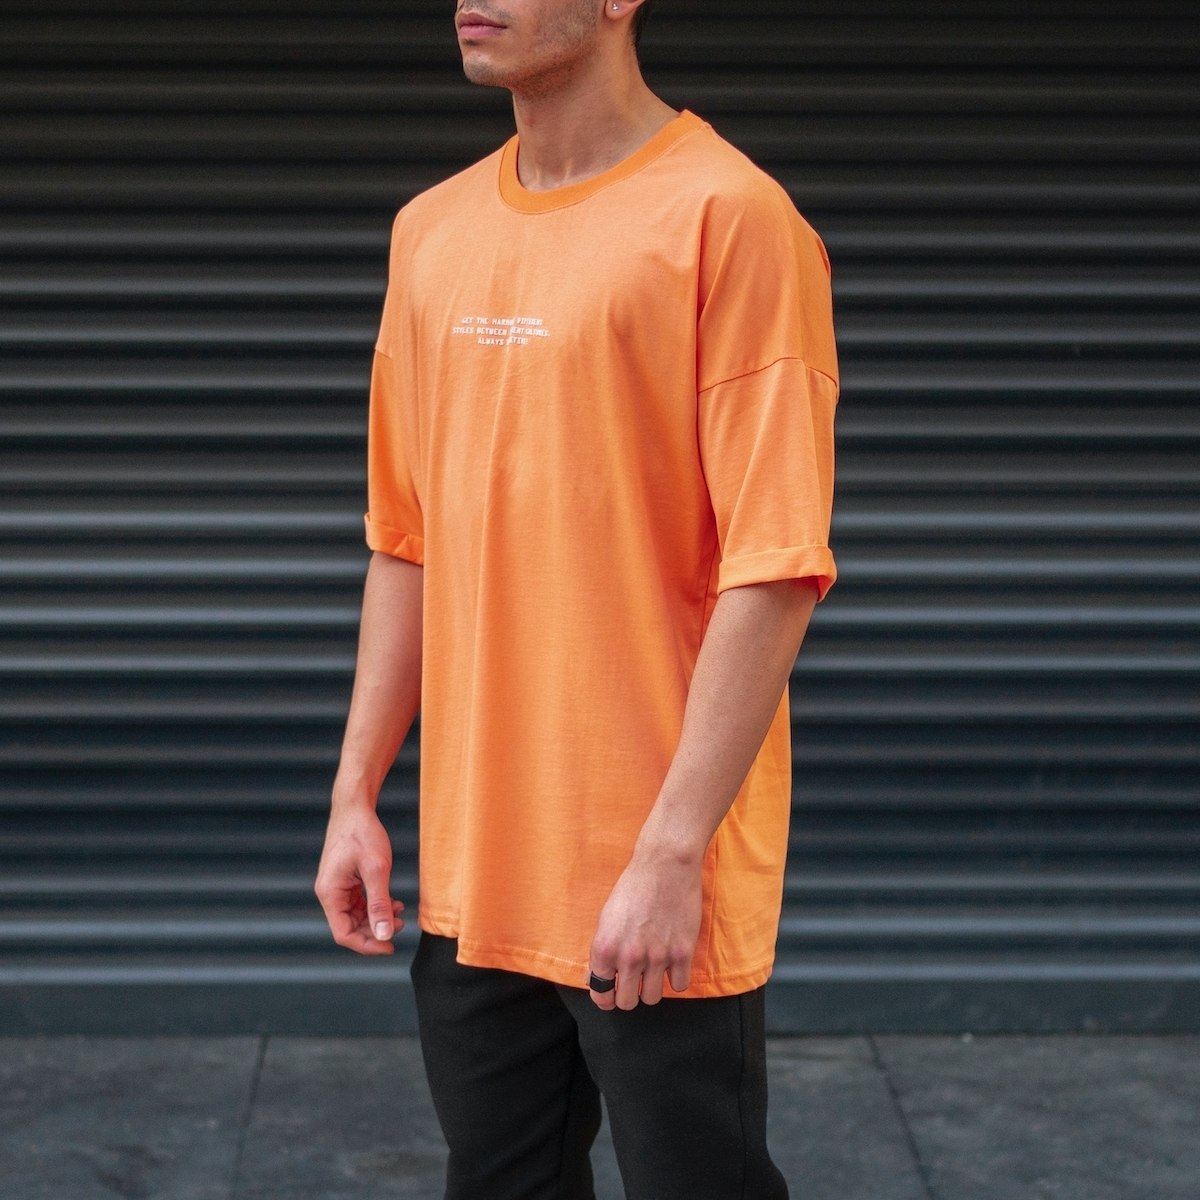 cool orange t shirt